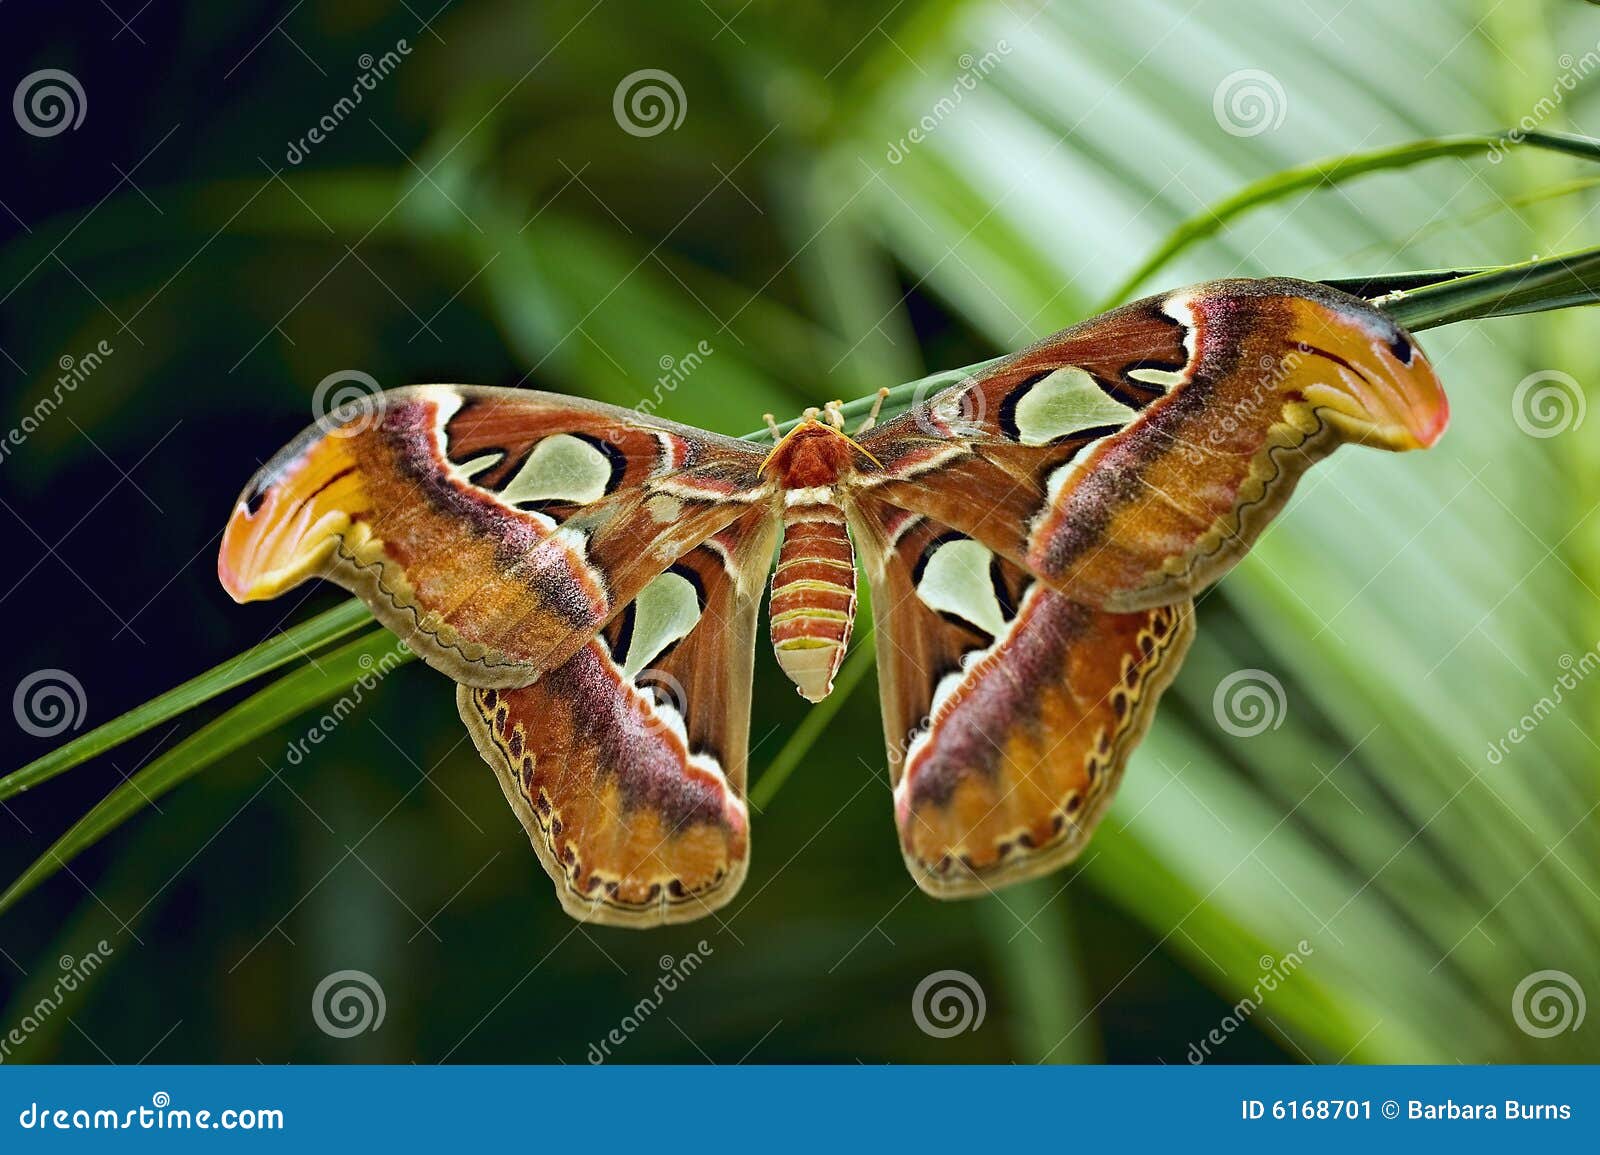 giant atlas moth